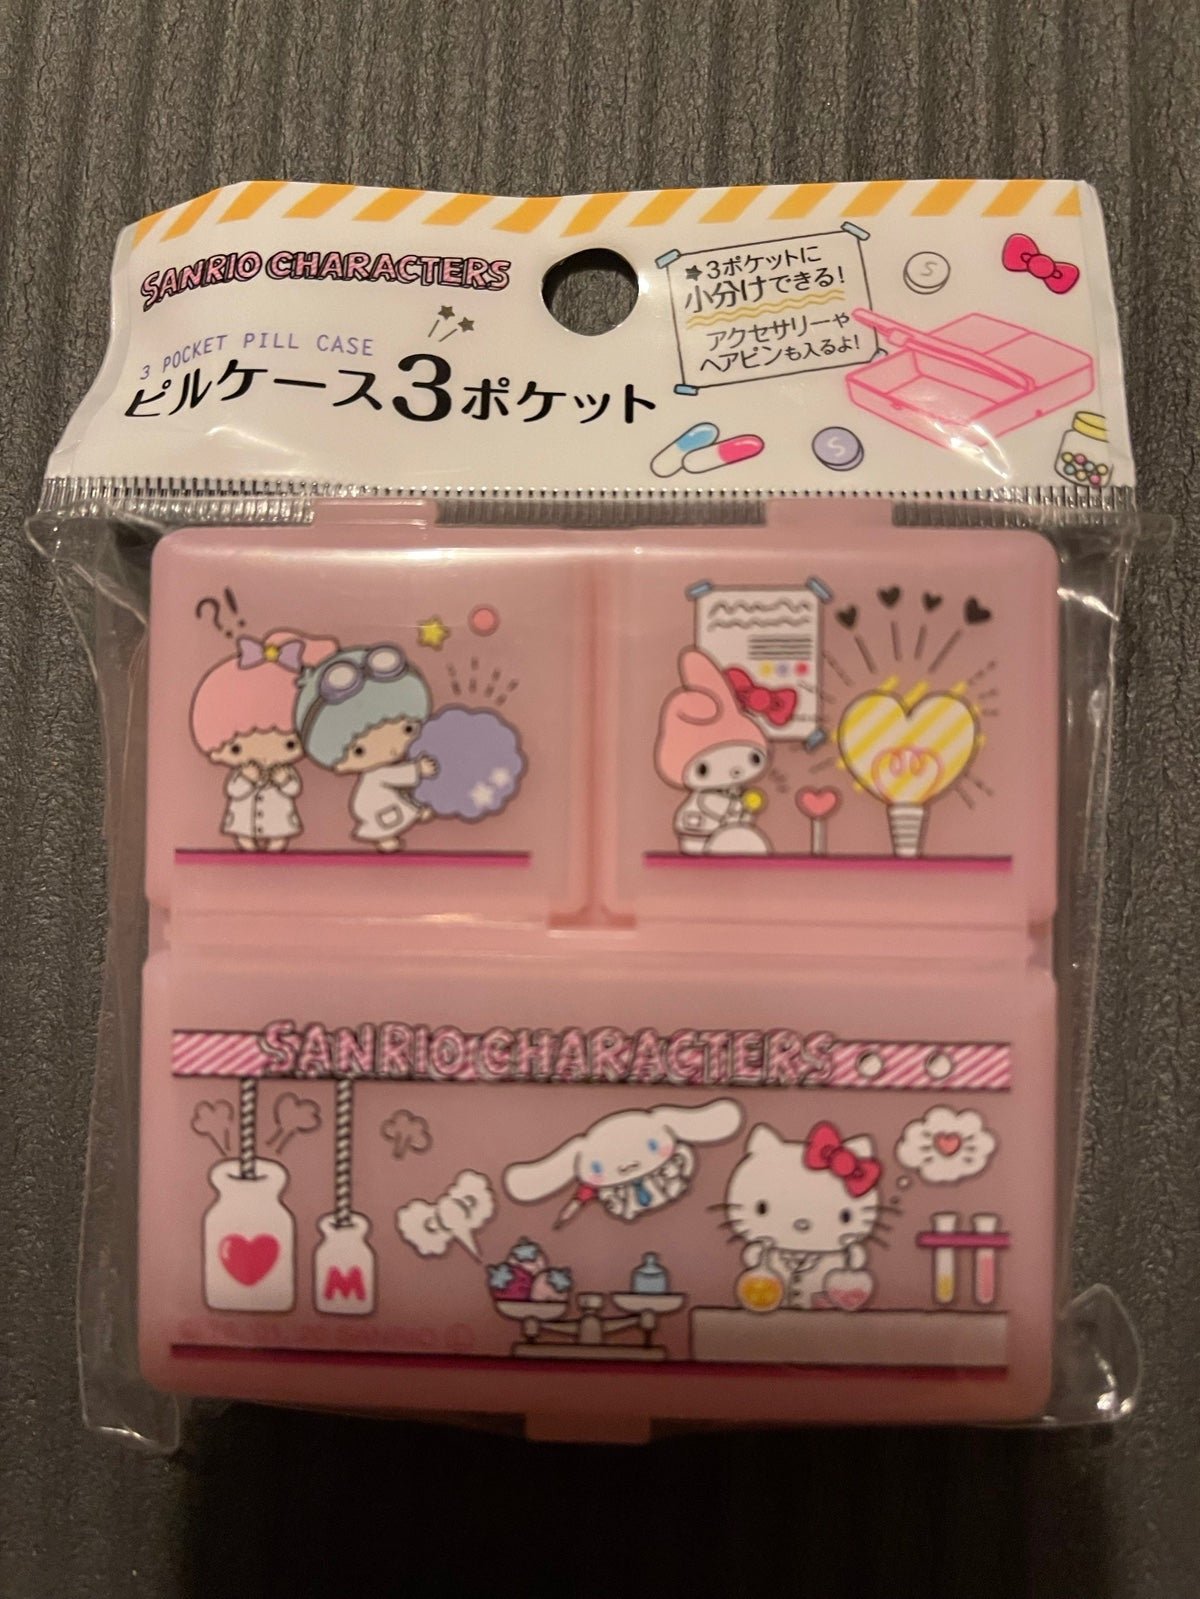 Sanrio/Hello Kitty pocket pill case e4Pj7F01k